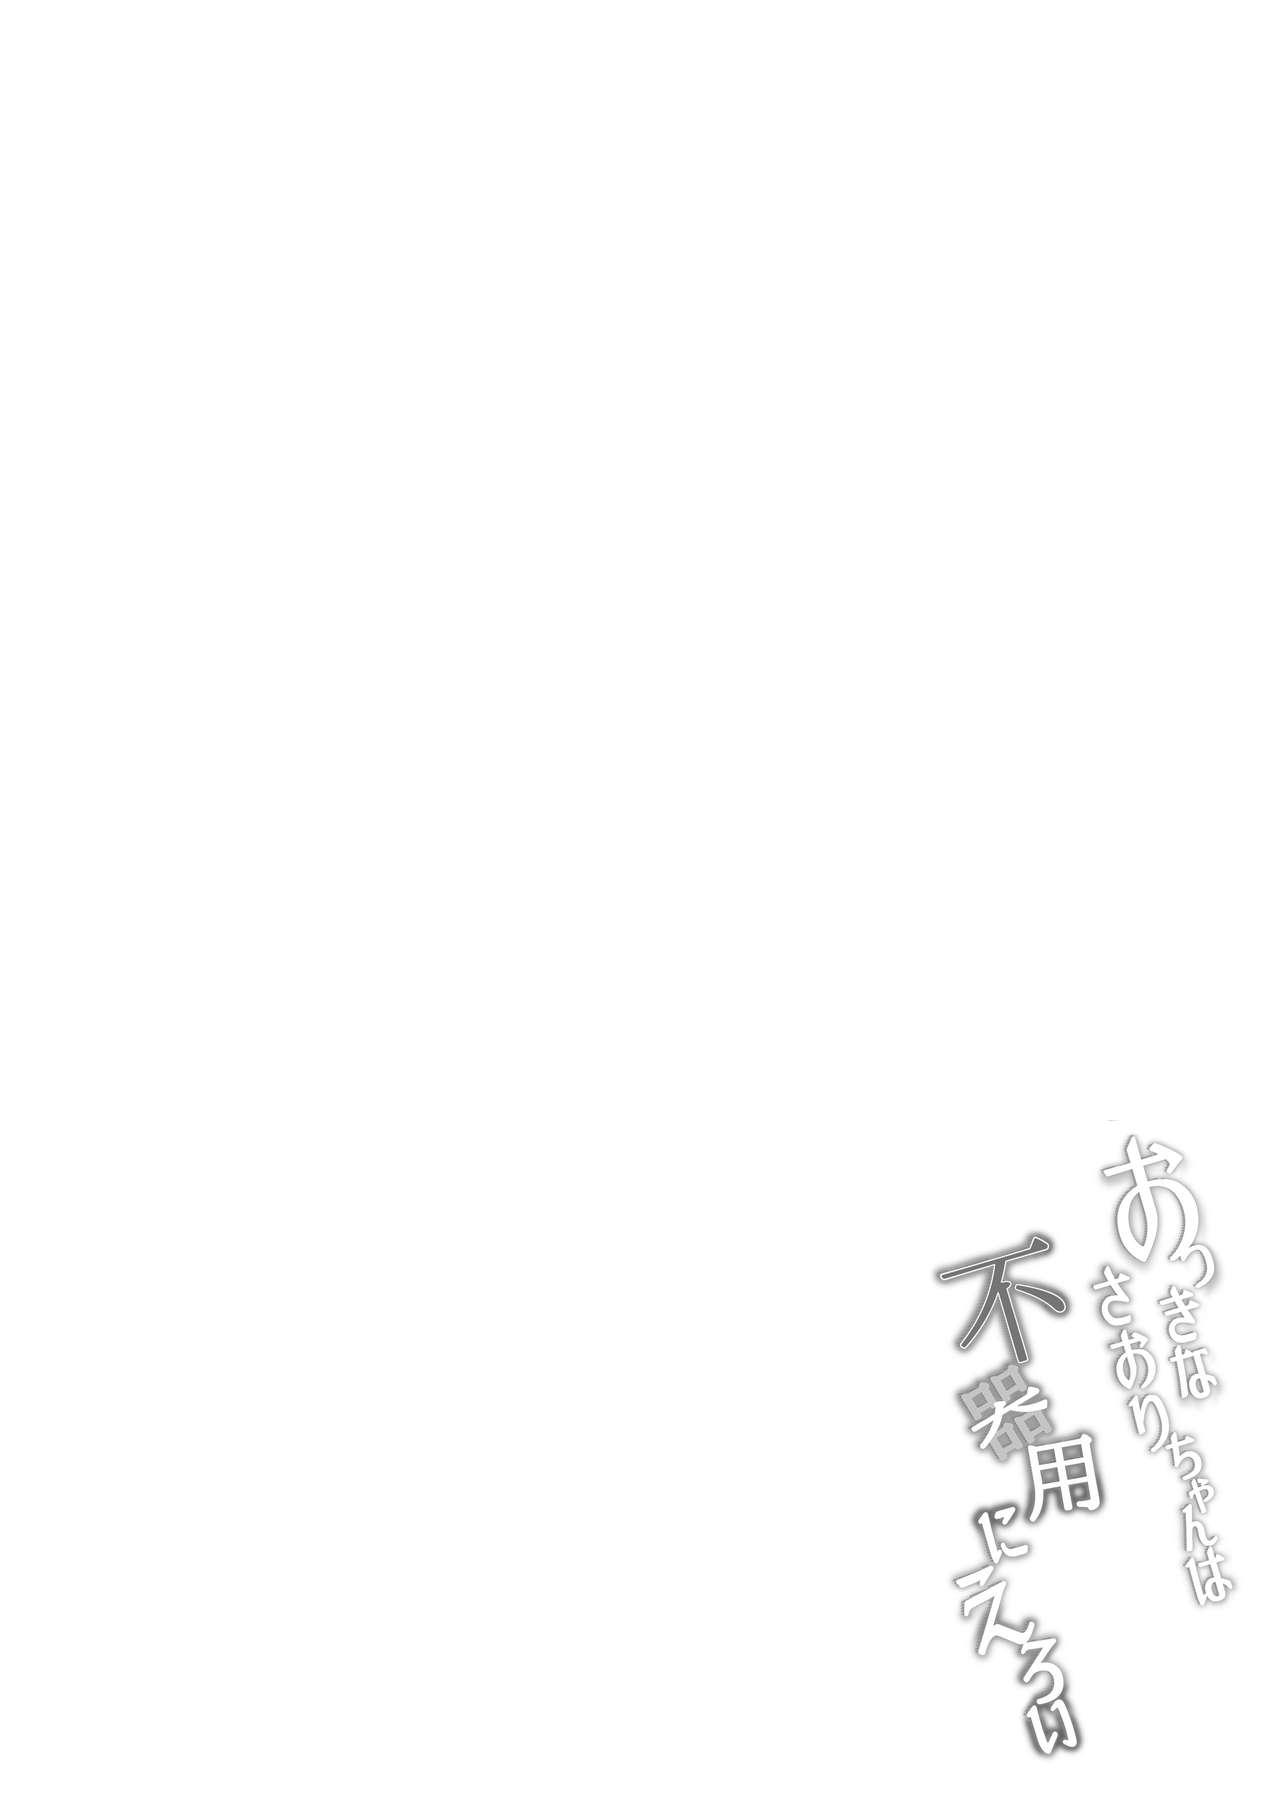 Trimmed Okki na Saori-chan wa Bukiyou ni Eroi - Original Weird - Page 5